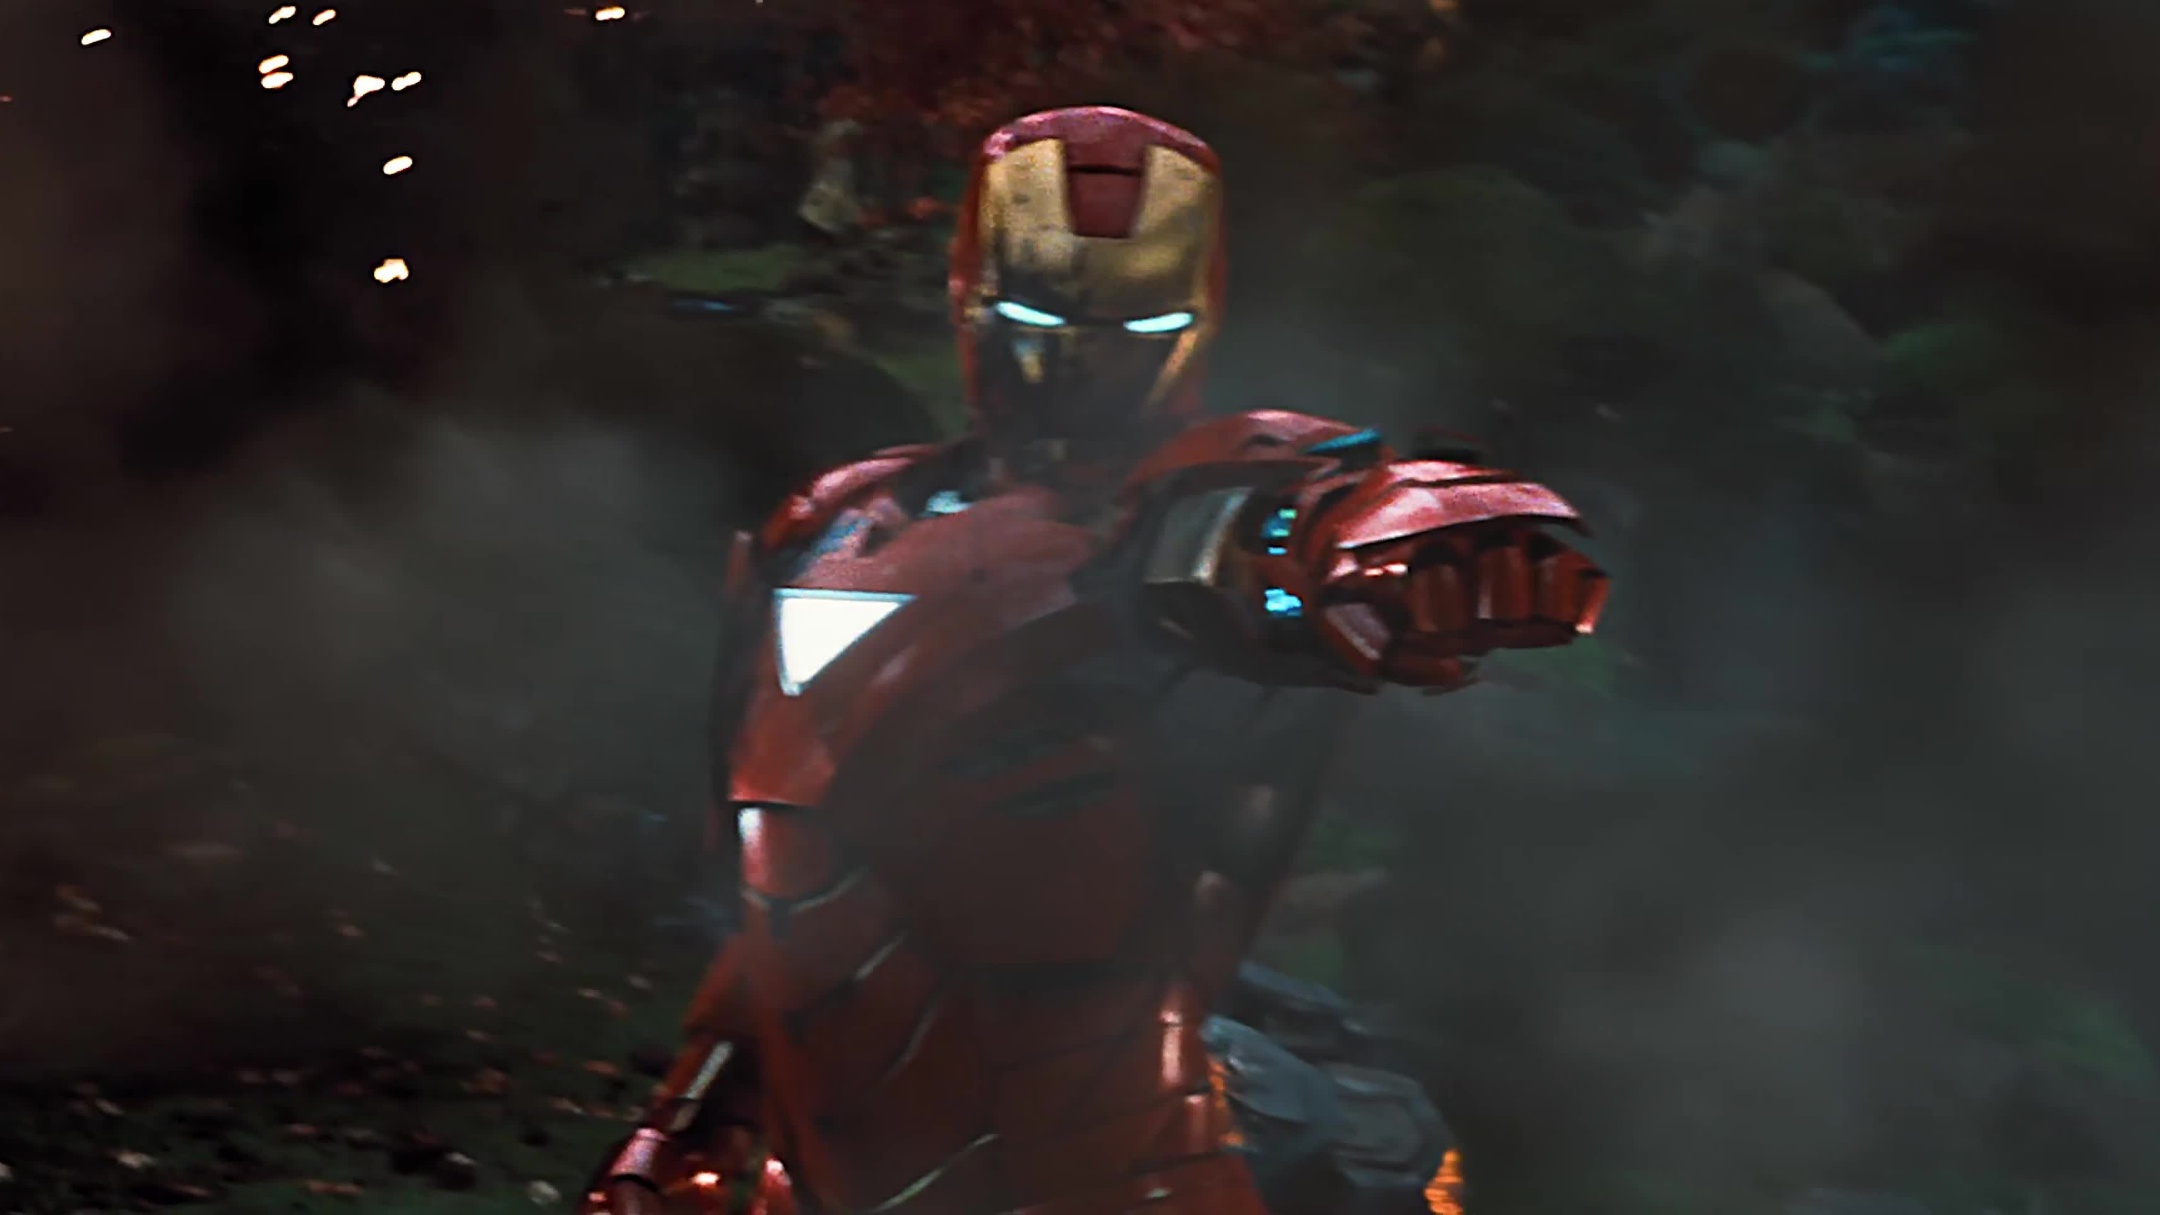 Được chào đón đến với bộ sưu tập Iron Man đầy ấn tượng của chúng tôi, hãy cùng đón nhận Mark 85 - phiên bản cuối cùng của Iron Man dành cho Avengers: Endgame. Anh hùng của chúng ta đã sẵn sàng chiến đấu với những kẻ thù ác độc, và bạn sẽ cảm thấy như mình đang tham gia vào cuộc phiêu lưu đầy kích thích của anh ta khi nhìn vào hình ảnh liên quan đến Mark